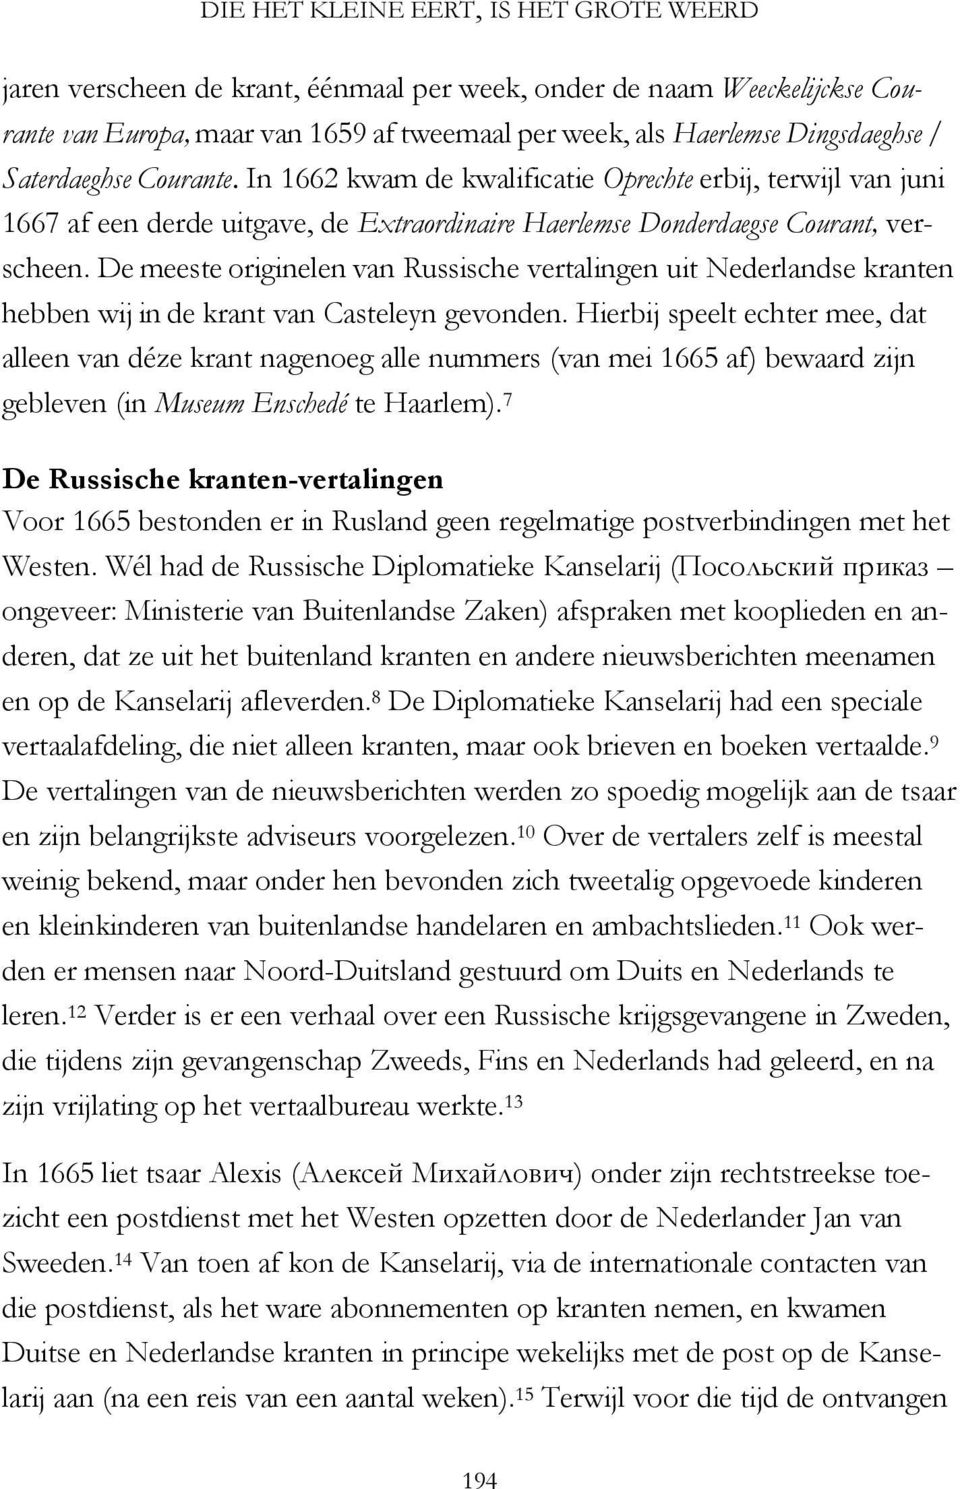 De meeste originelen van Russische vertalingen uit Nederlandse kranten hebben wij in de krant van Casteleyn gevonden.